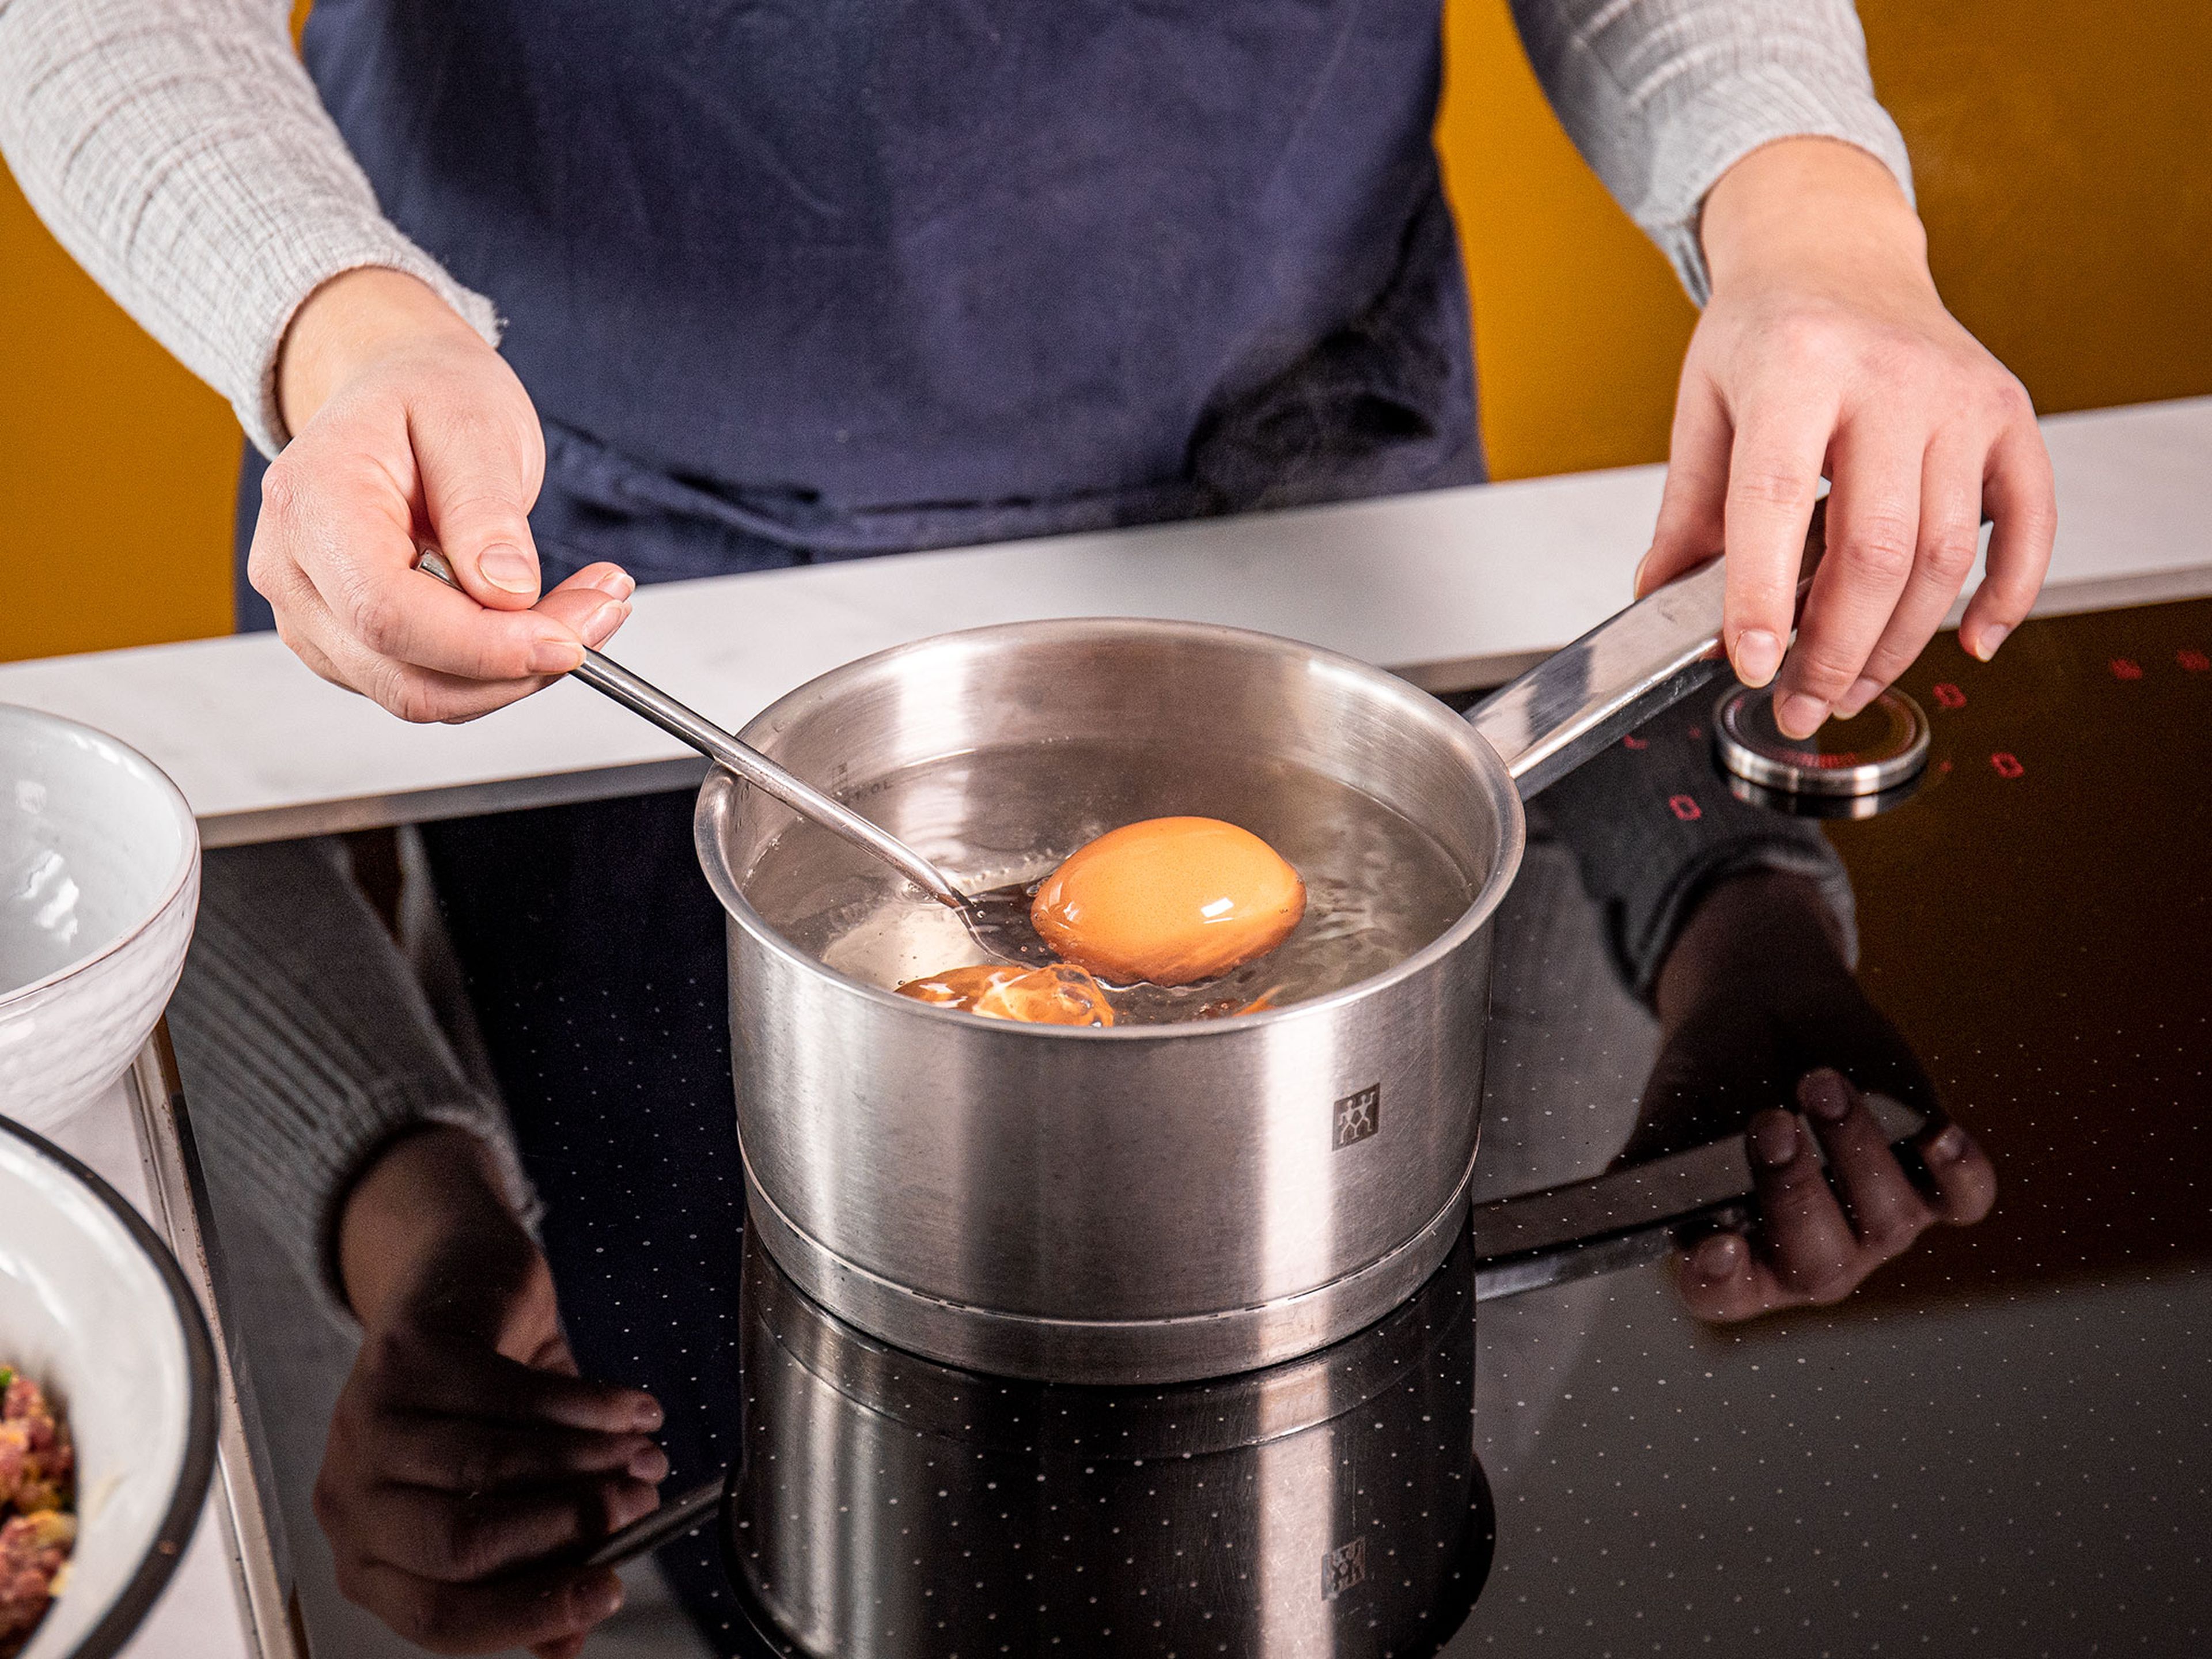 Einen kleinen Topf mit Wasser auf großer Stufe  erhitzen. Sobald das Wasser kocht, die restlichen Eier hineingeben und 6 1/2 Min. kochen lassen. Abtropfen lassen und zum Abkühlen unter fließendes kaltes Wasser halten. Nun die Eier schälen.